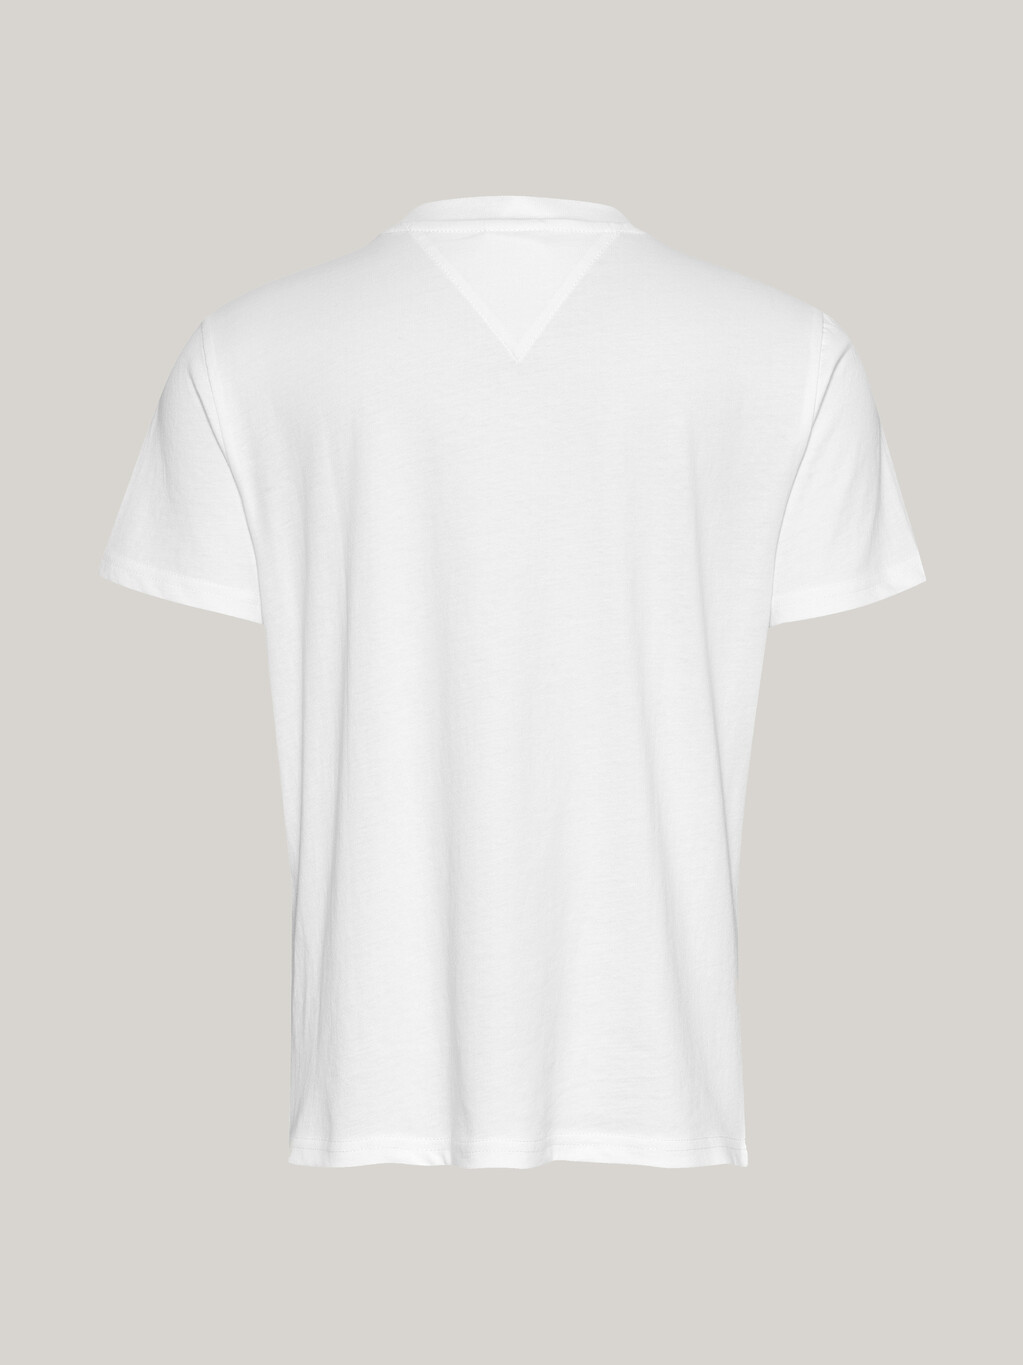 Essential 基本款標誌 T 恤, White, hi-res